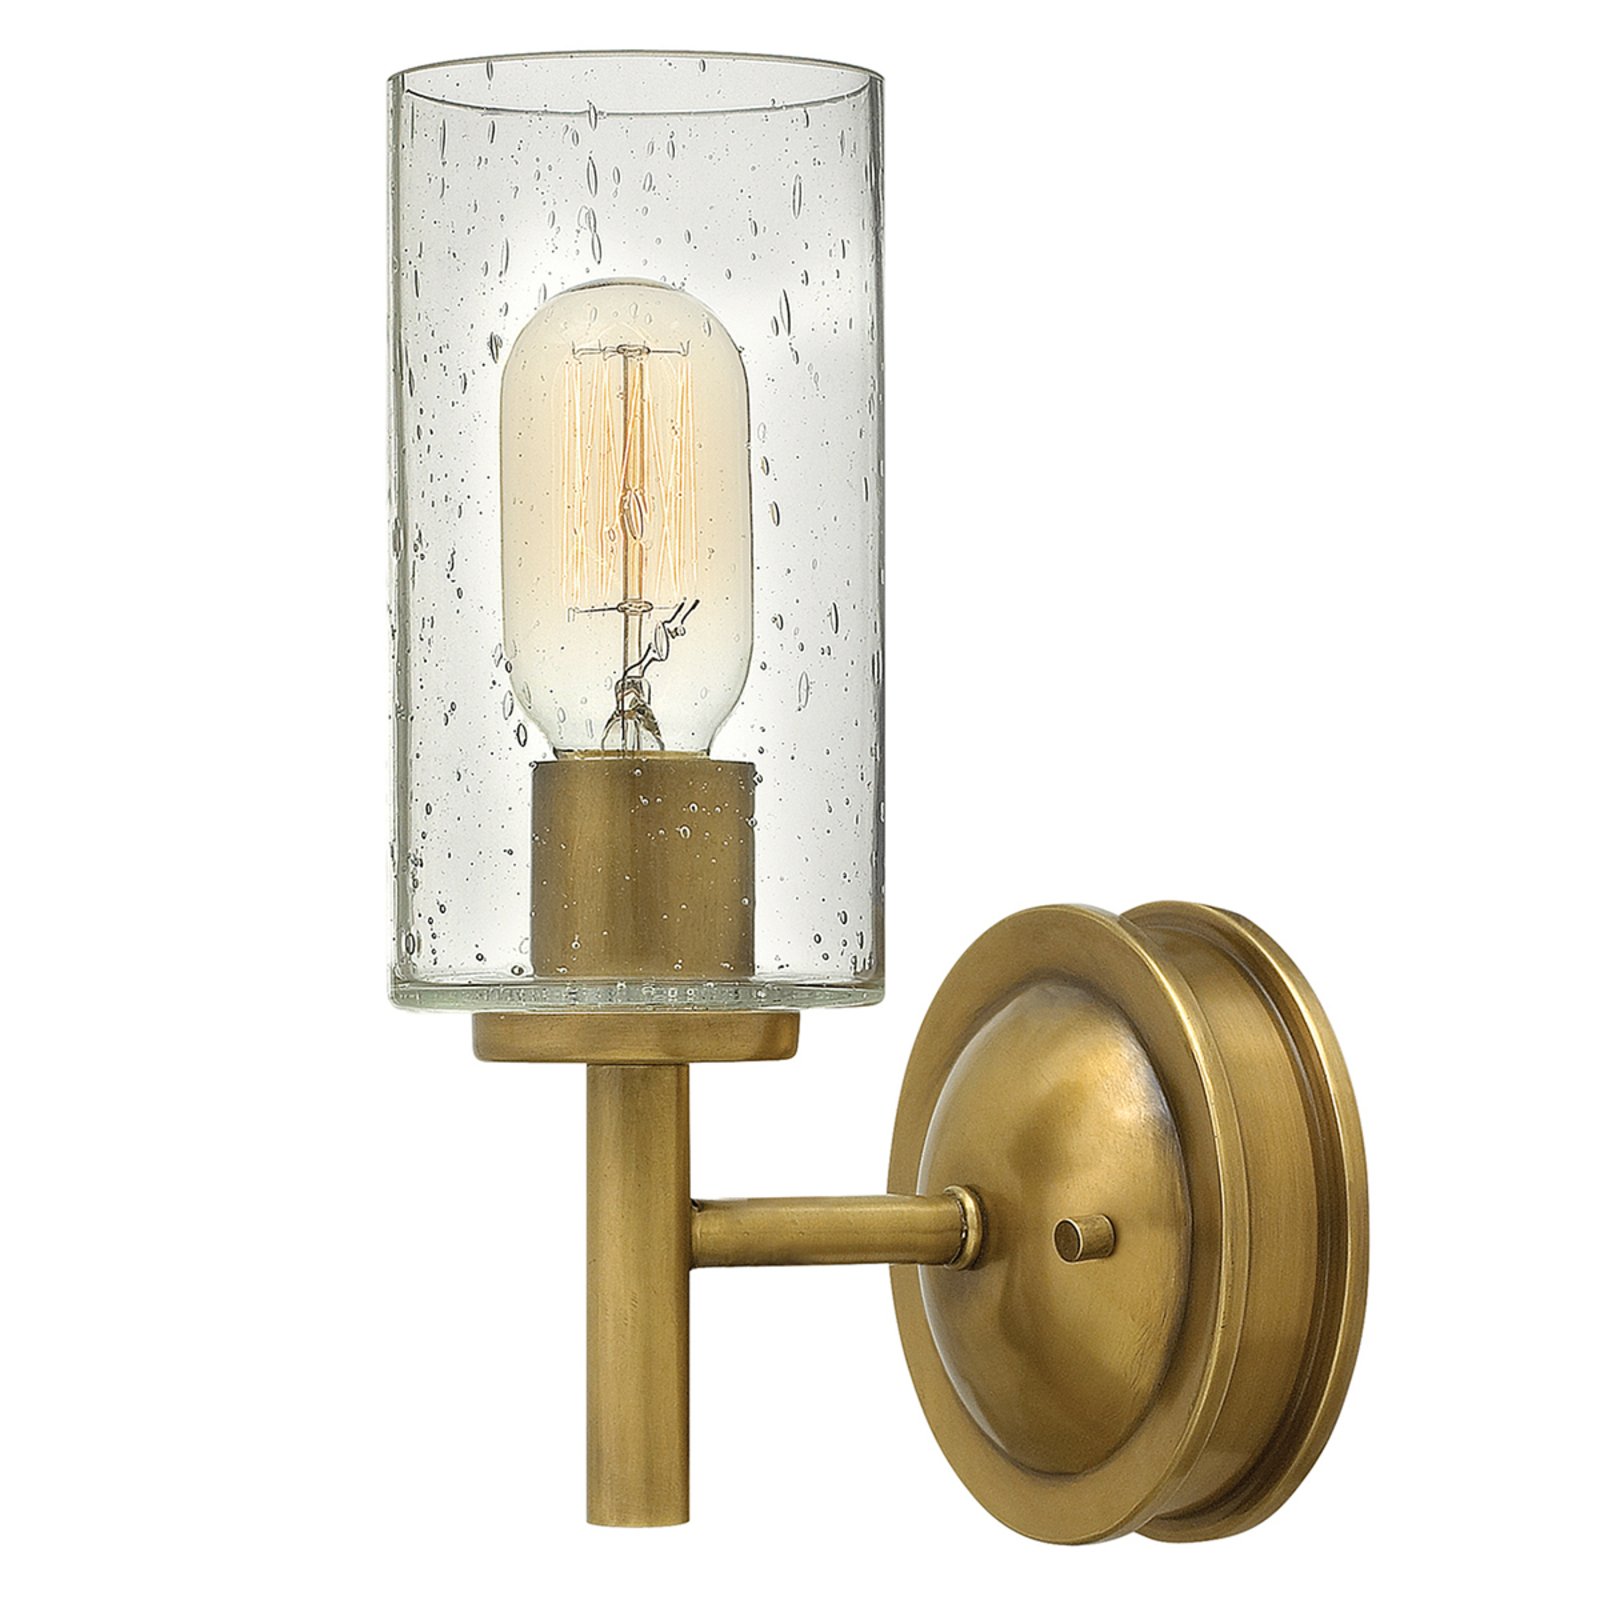 Vägglampa Collier i antik design